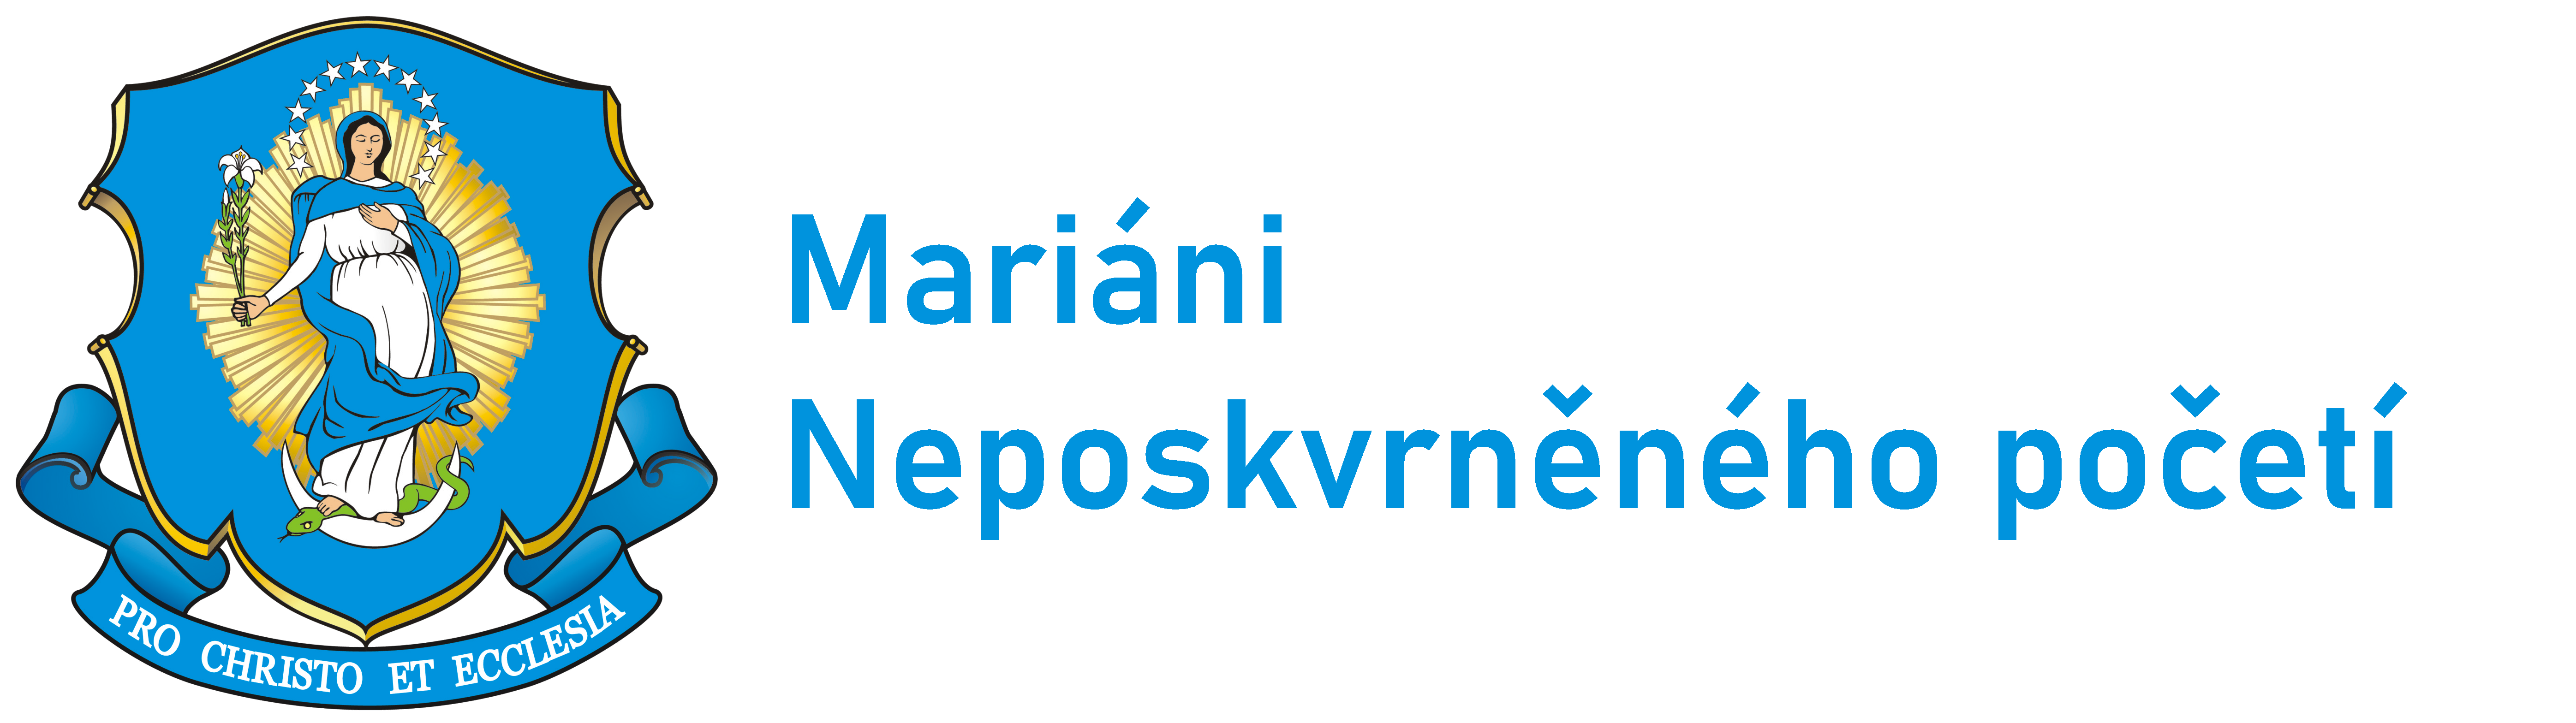 Logo Charisma a poslání - Mariáni ČR